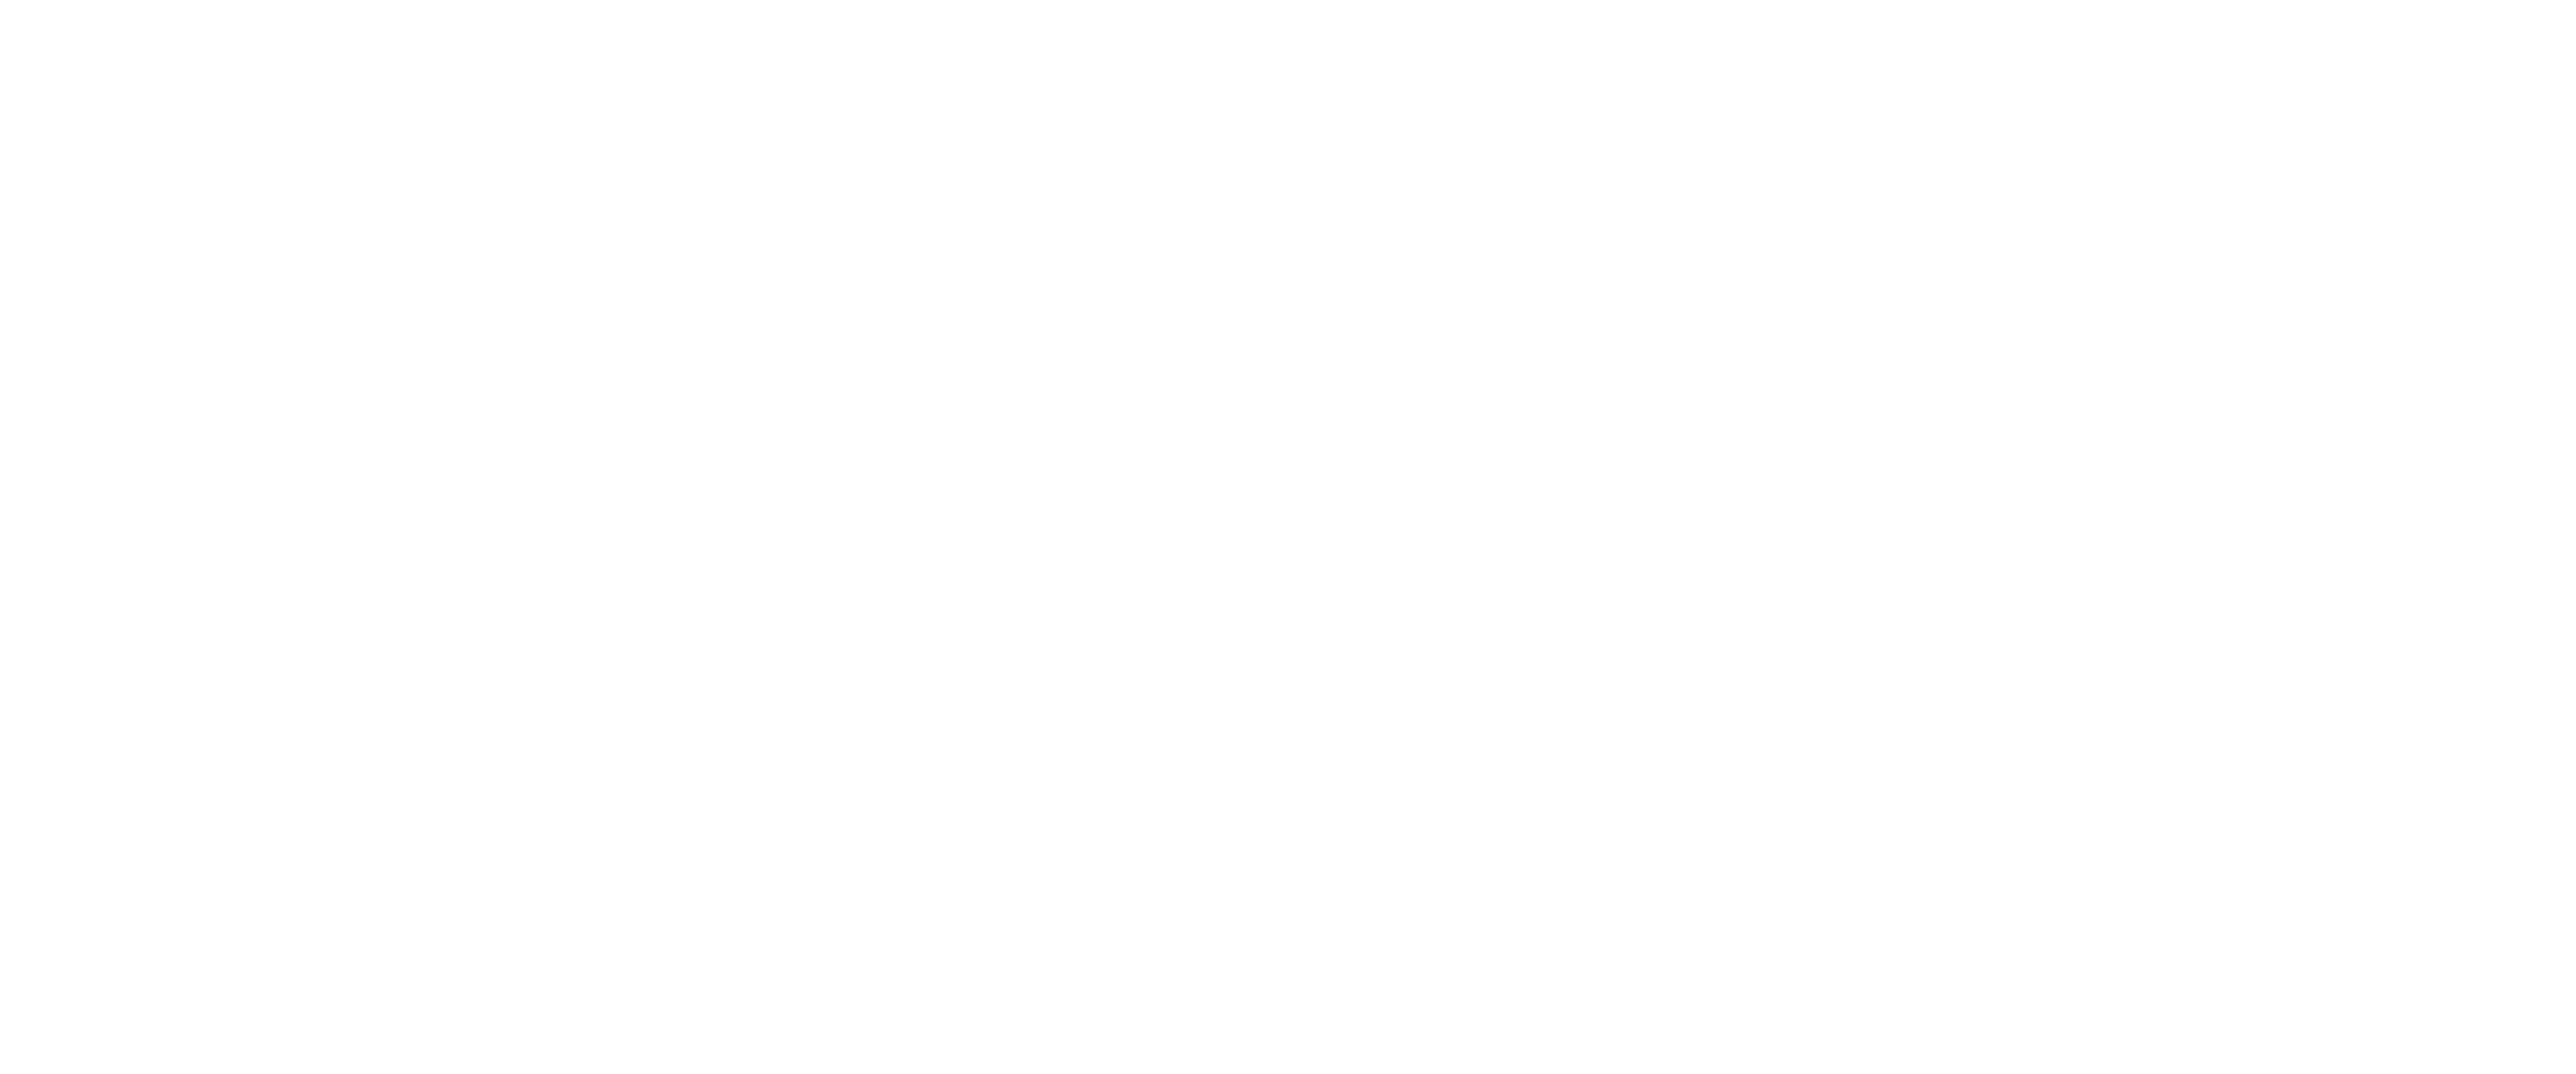 Pottery Classes Ceramic Studio